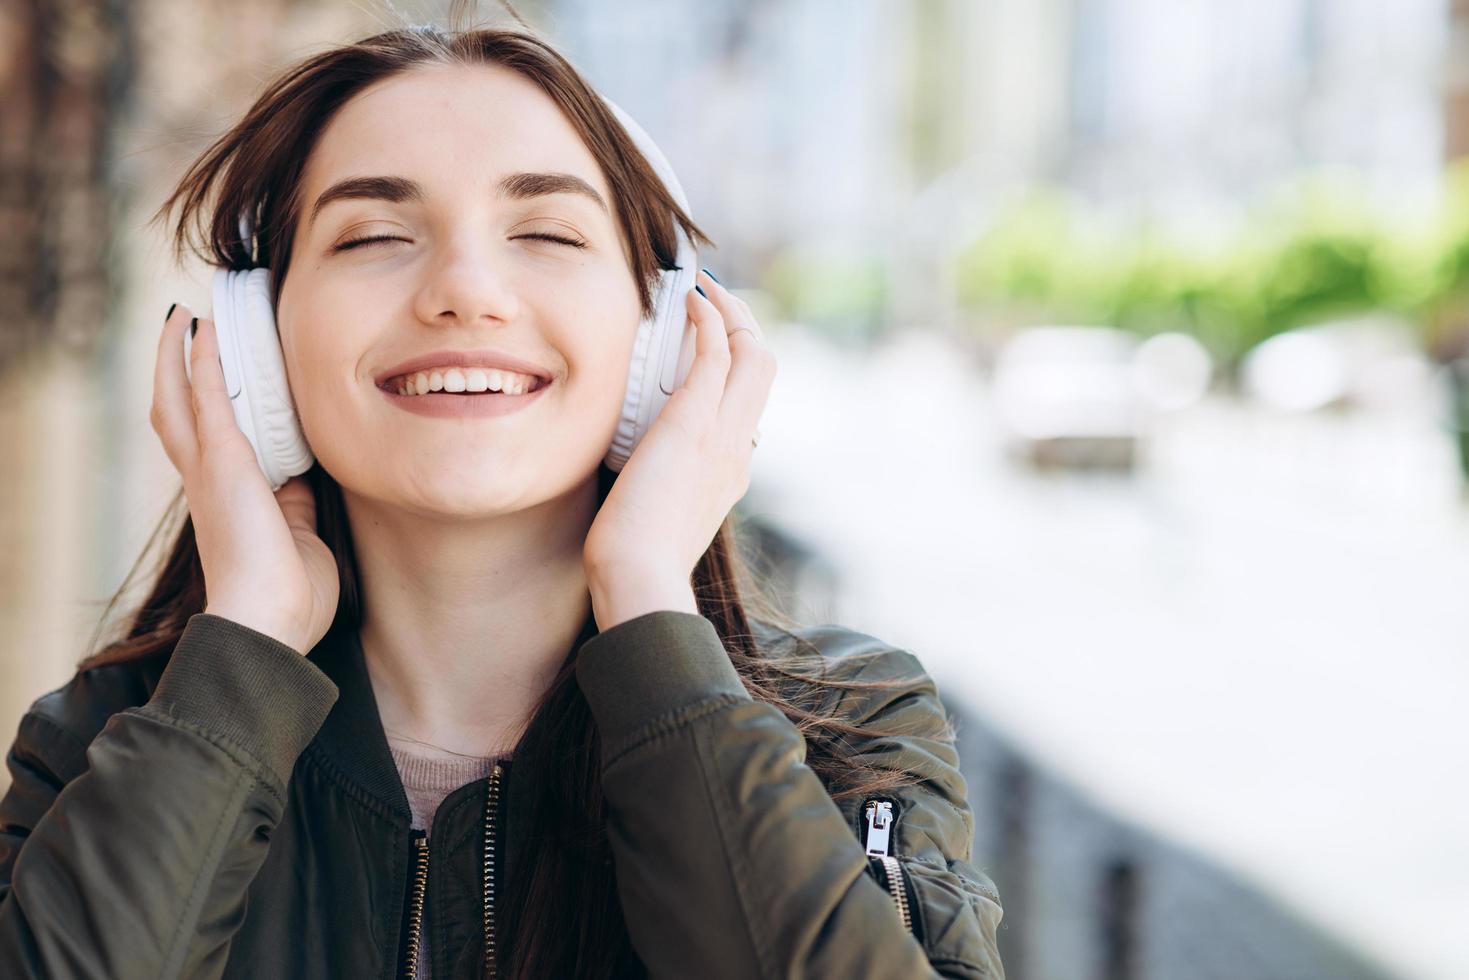 heureuse, la jeune fille apprécie la musique provenant des écouteurs. photo